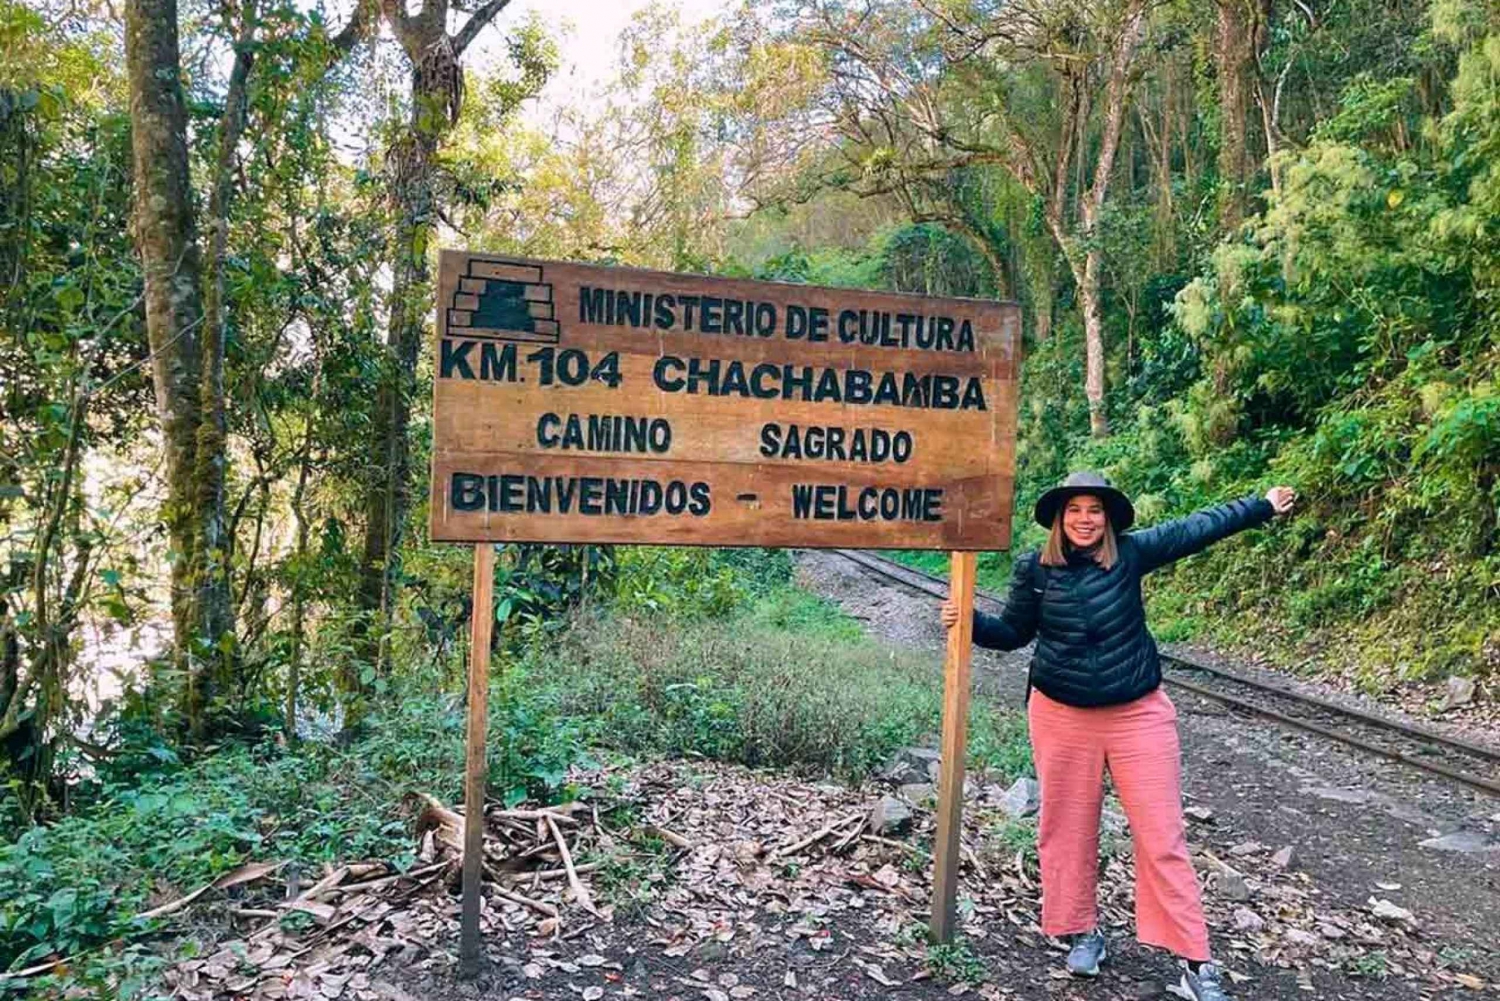 Grupo Smoll | Trilha Inca 2 dias - nova rota para Machu Picchu